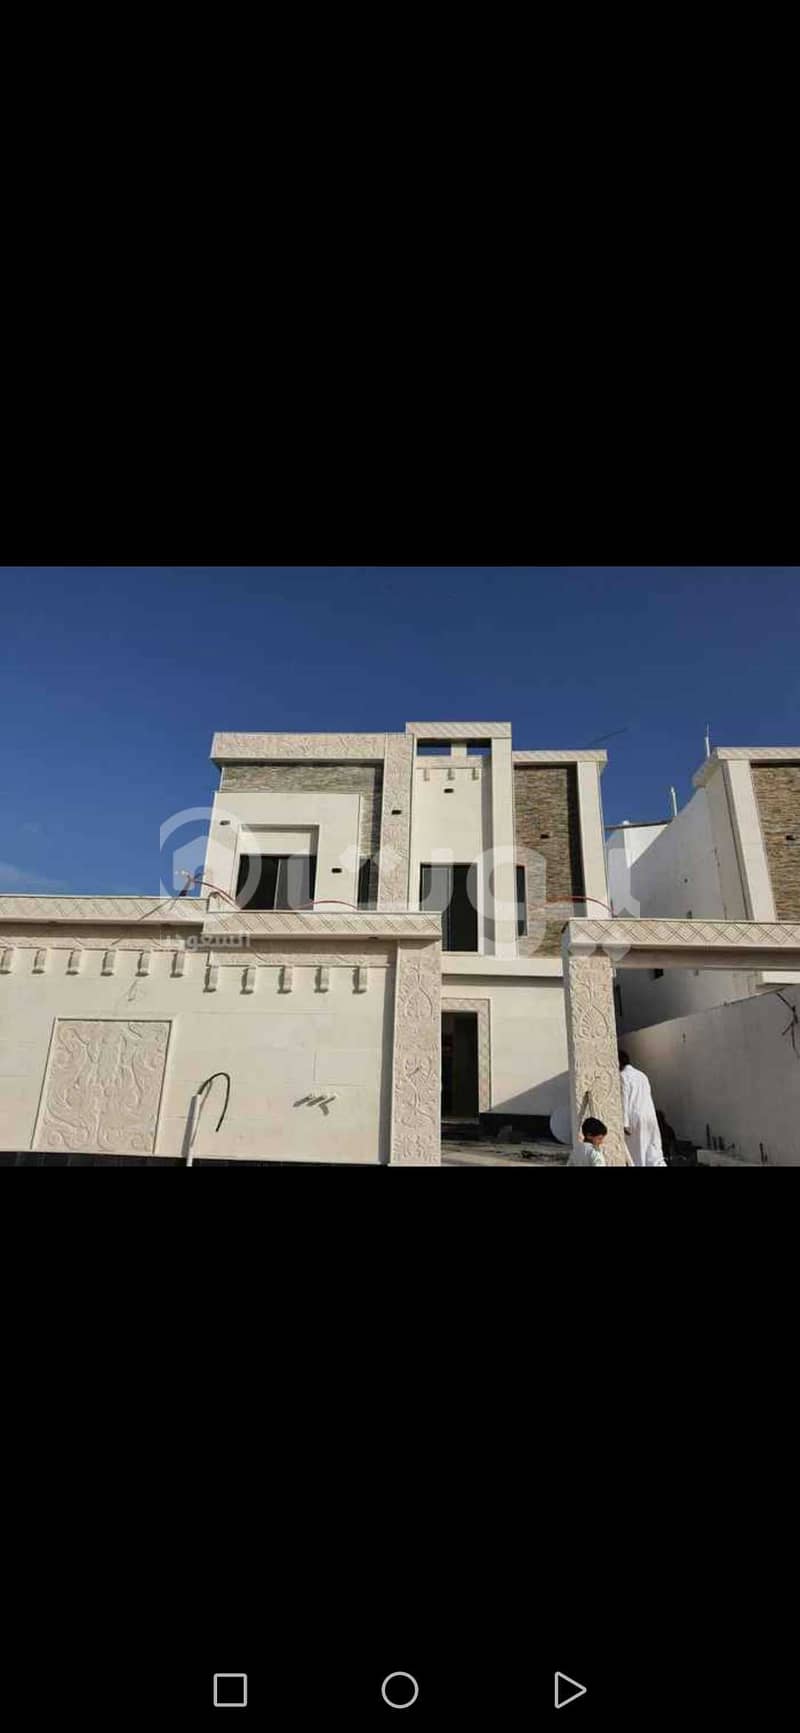 Villa staircase hall for sale in Al Aqiq, Al Khobar